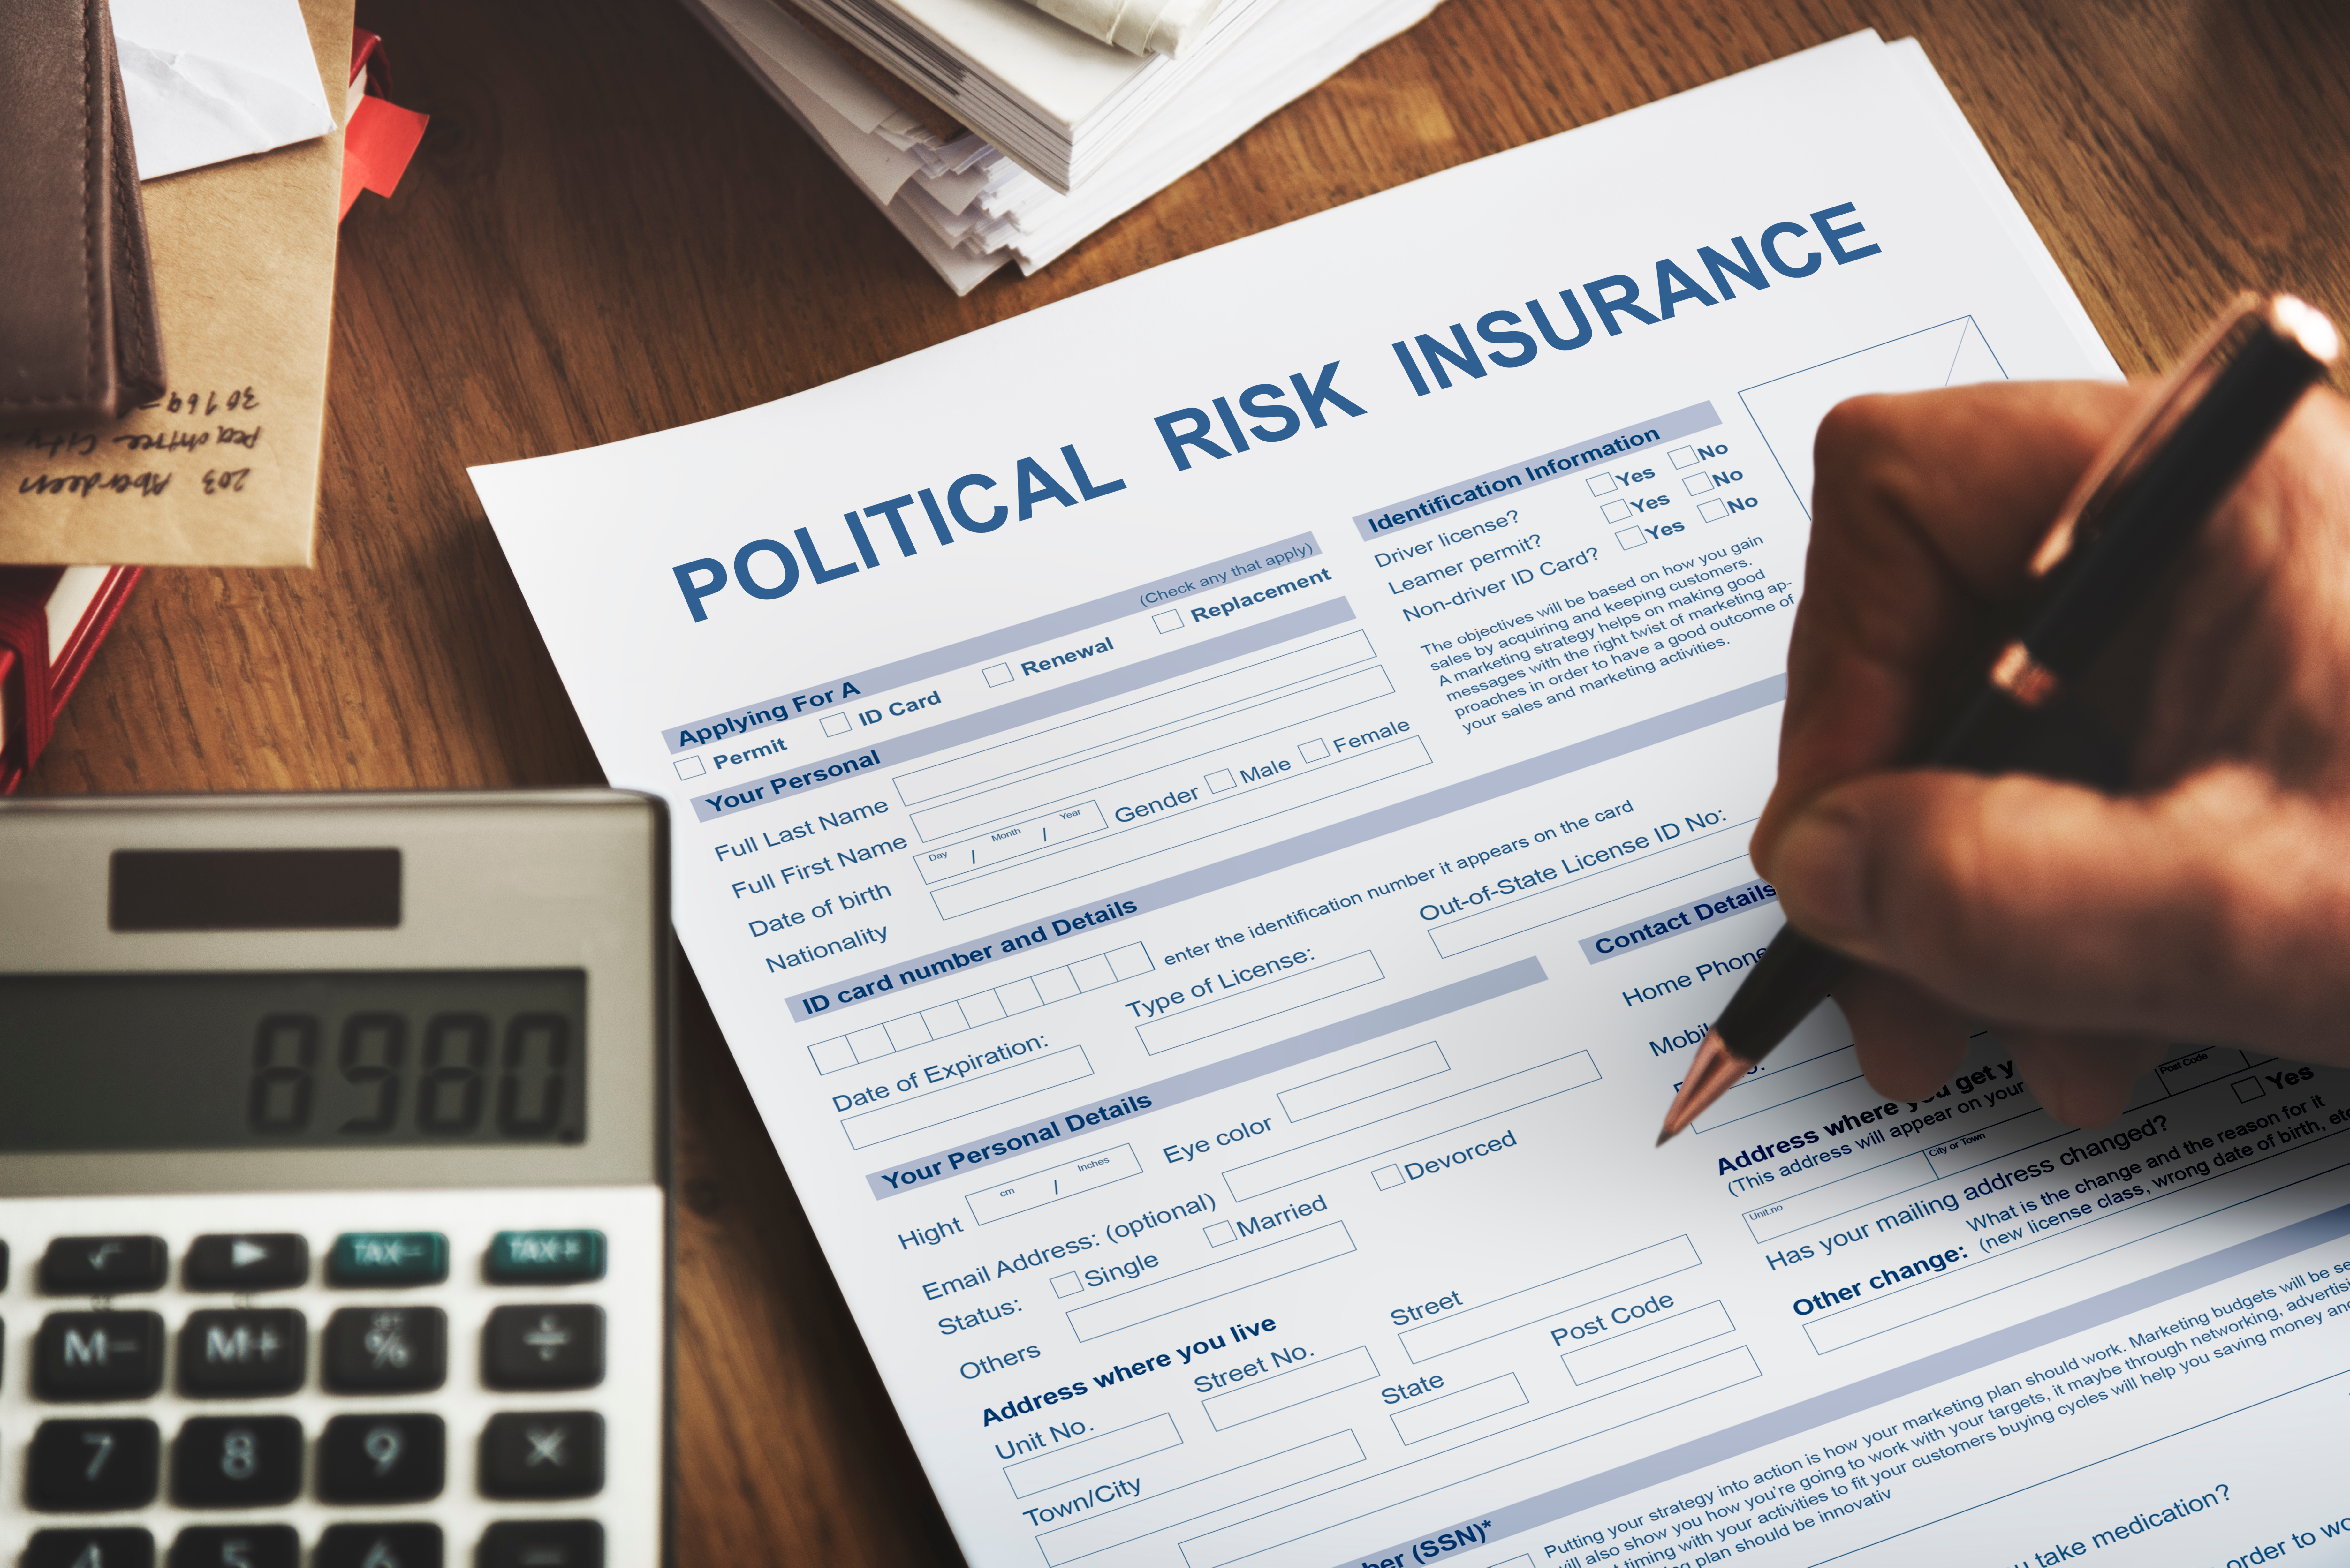 Political Risk Insurance